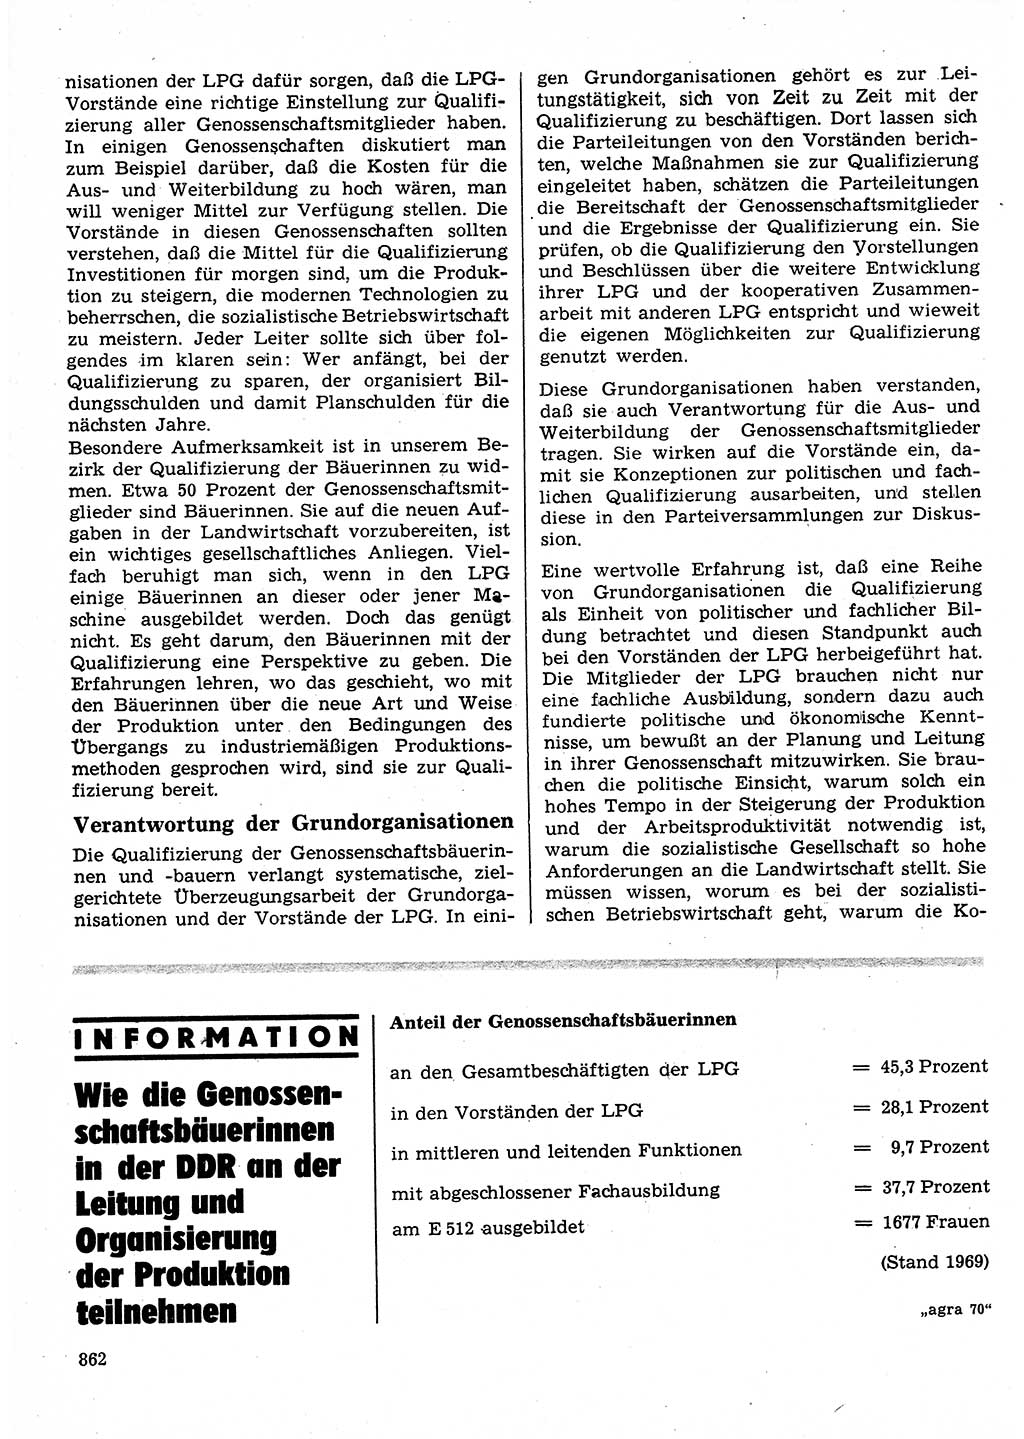 Neuer Weg (NW), Organ des Zentralkomitees (ZK) der SED (Sozialistische Einheitspartei Deutschlands) für Fragen des Parteilebens, 25. Jahrgang [Deutsche Demokratische Republik (DDR)] 1970, Seite 862 (NW ZK SED DDR 1970, S. 862)